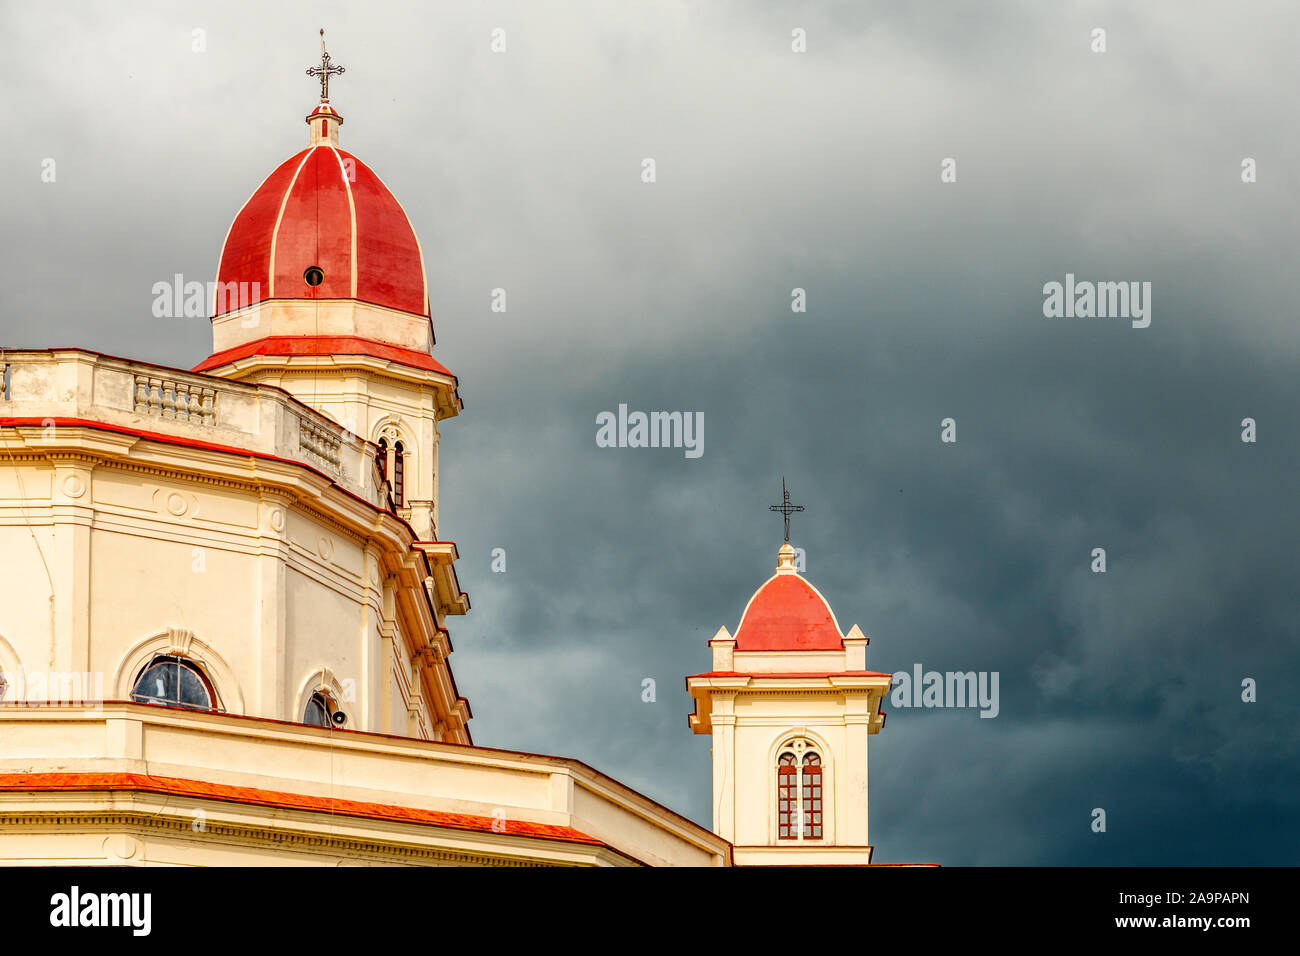 Tappata rosse torri della basilica in onore di Nostra Signora della Carità con black thunder nuvole sopra, El Cobre, Santiago de Cuba, Cuba Foto Stock